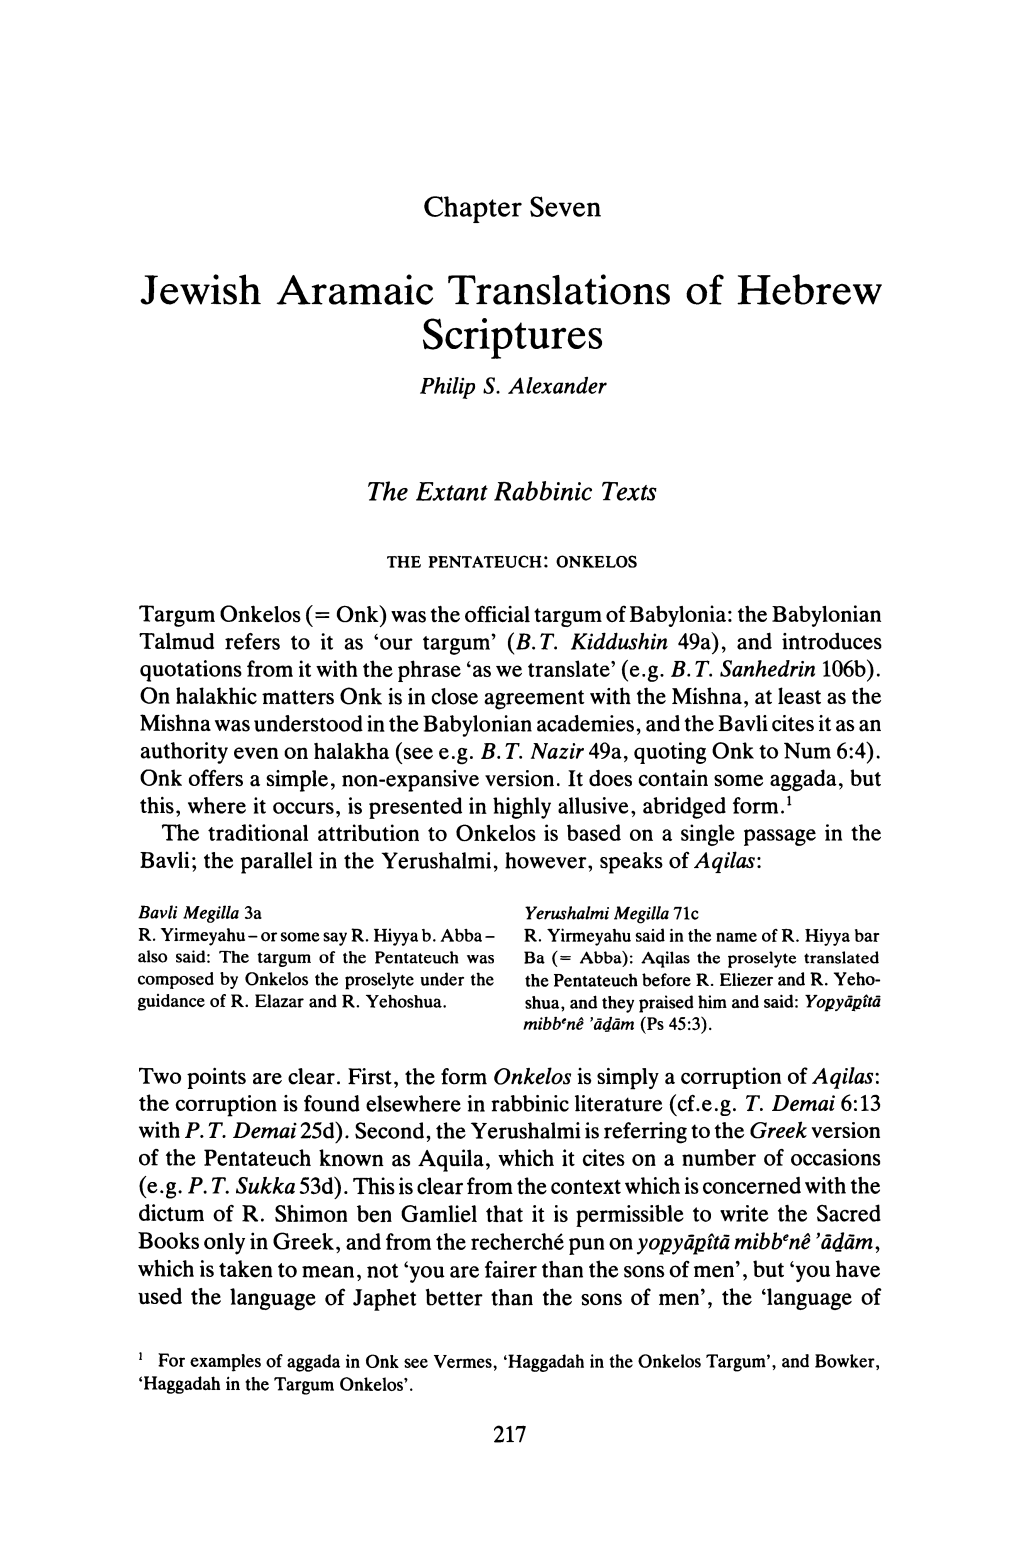 Jewish Aramaic Translations of Hebrew Scriptures Philip S